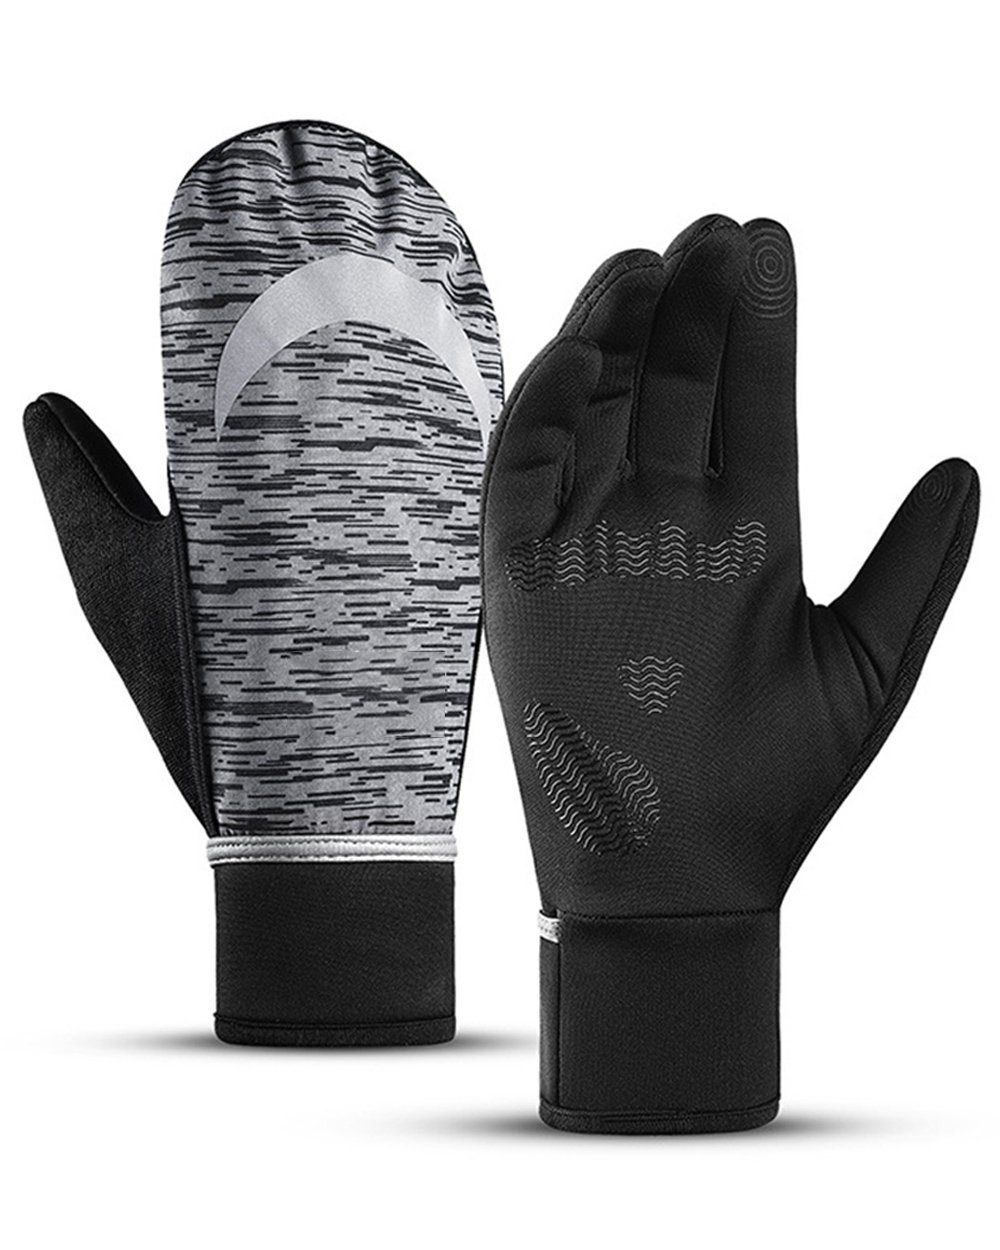 Dekorative Fahrradhandschuhe Winterwarme, faltbare Handschuhe, Sporthandschuhe Skihandschuhe, Sporthandschuhe, Warme Handschuhe